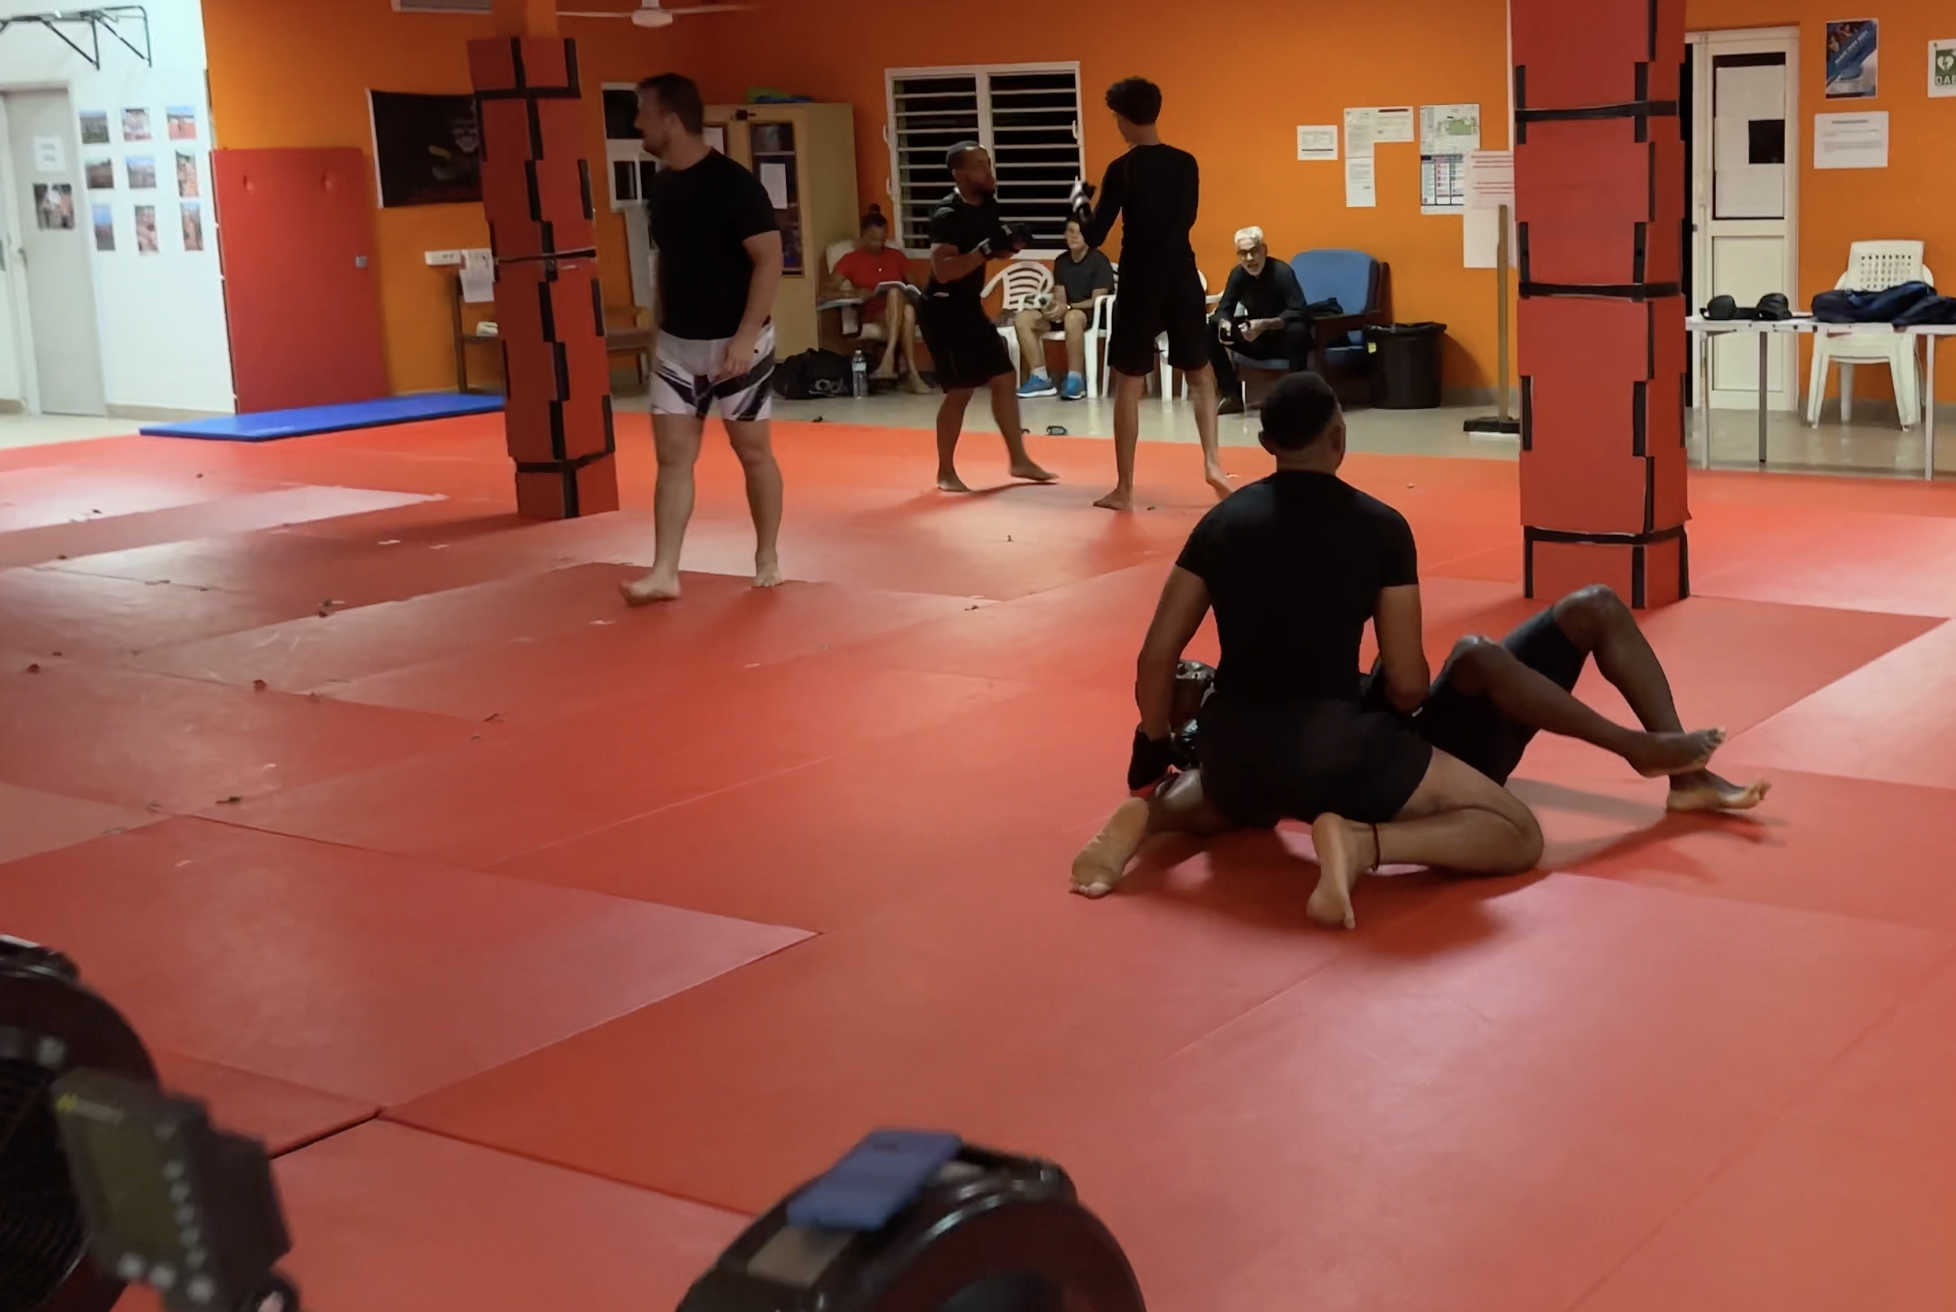     [VIDEO] MMA en Martinique : entre 70 et 80 licenciés, une pratique en plein essor

